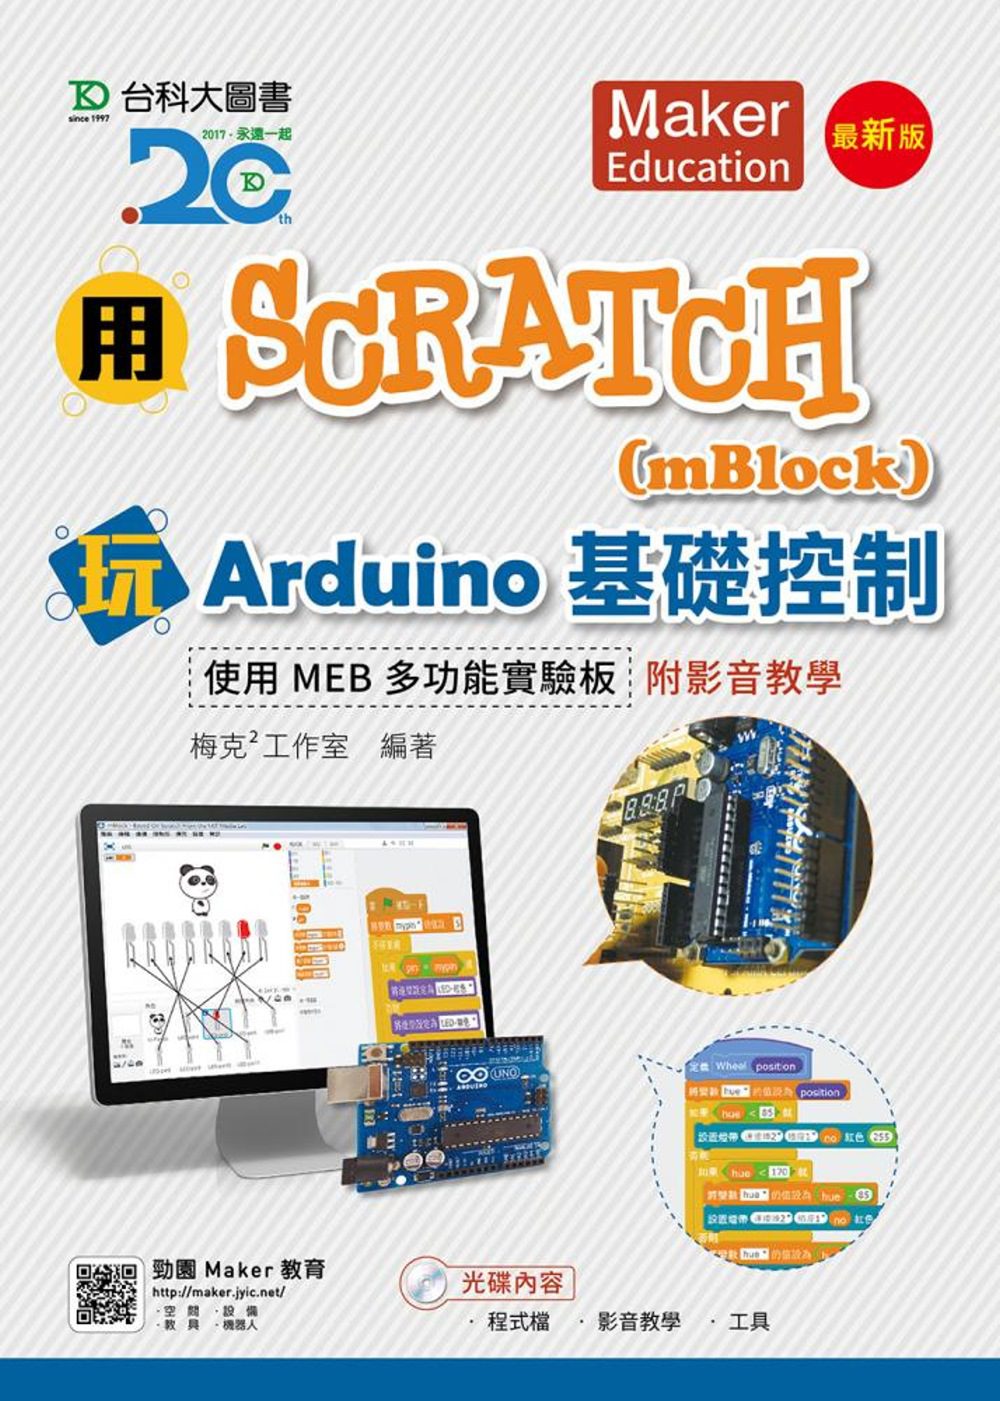 用Scratch(mBlock)玩Arduino基礎控制-使用MEB多功能實驗板附影音教學